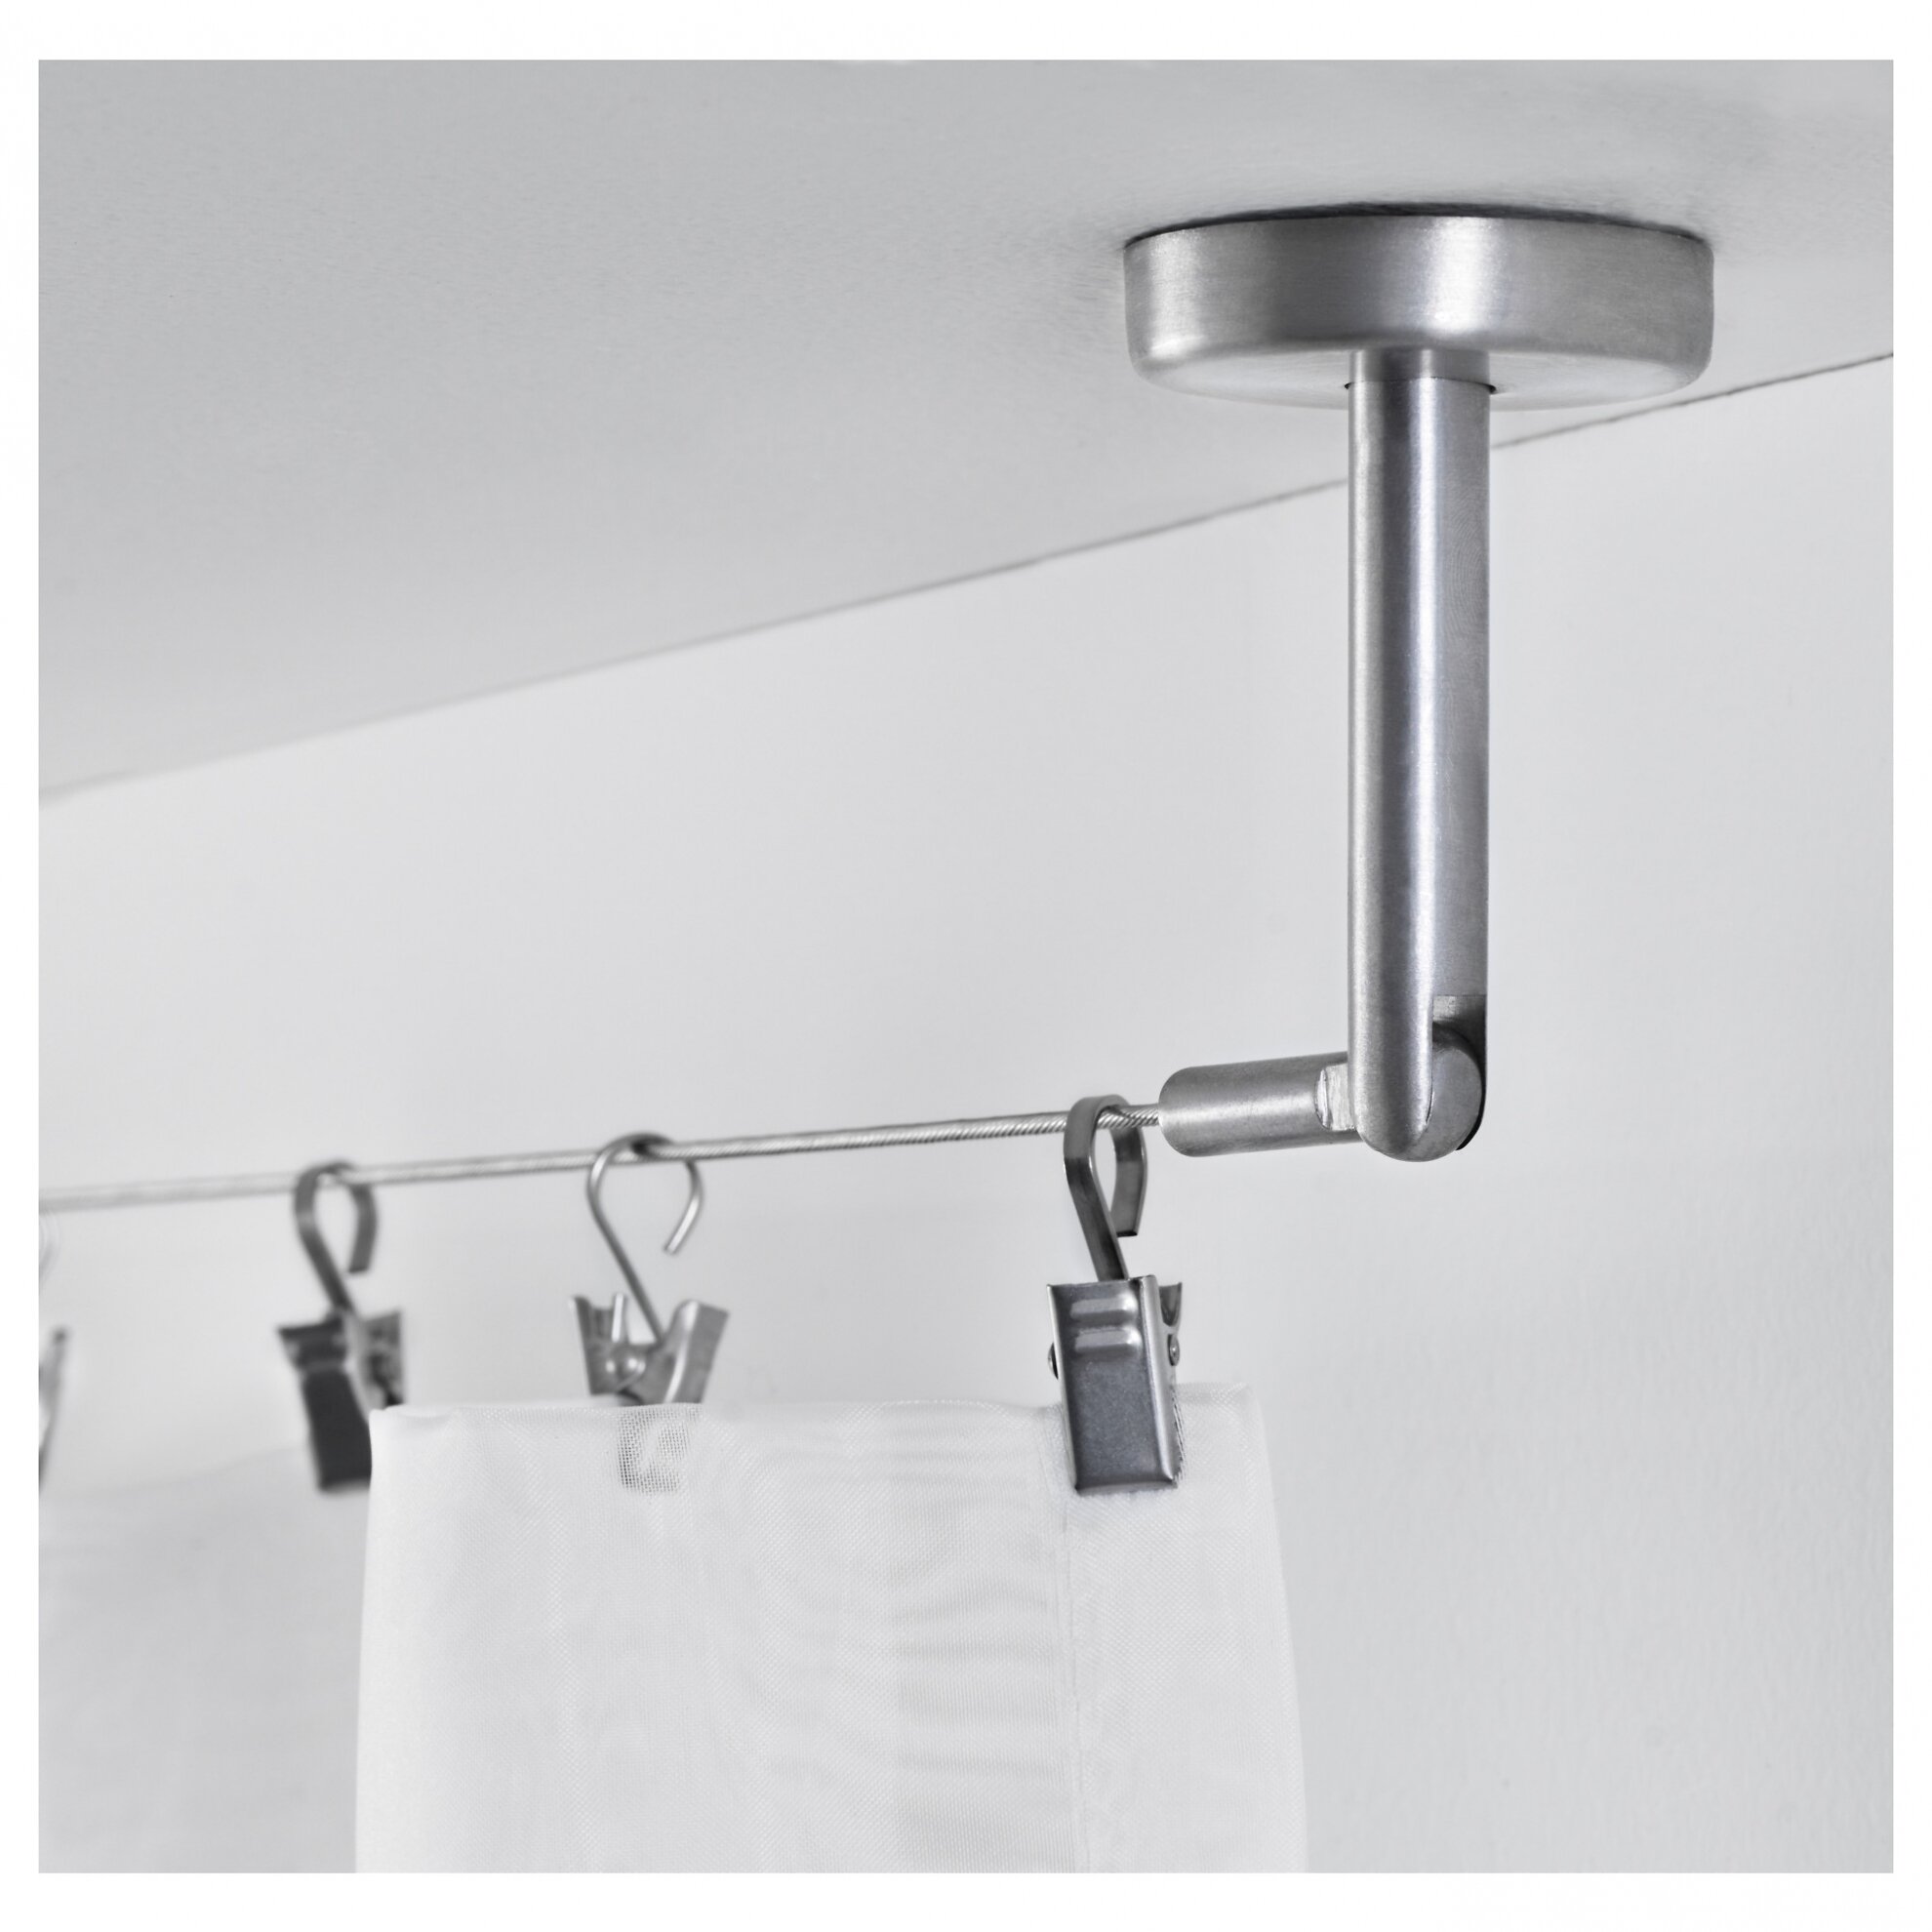 Ikea Shower Curtain for Best Your Bathroom Decoration: Ikea Shower Curtain | 84 Shower Curtain | Xl Shower Curtain